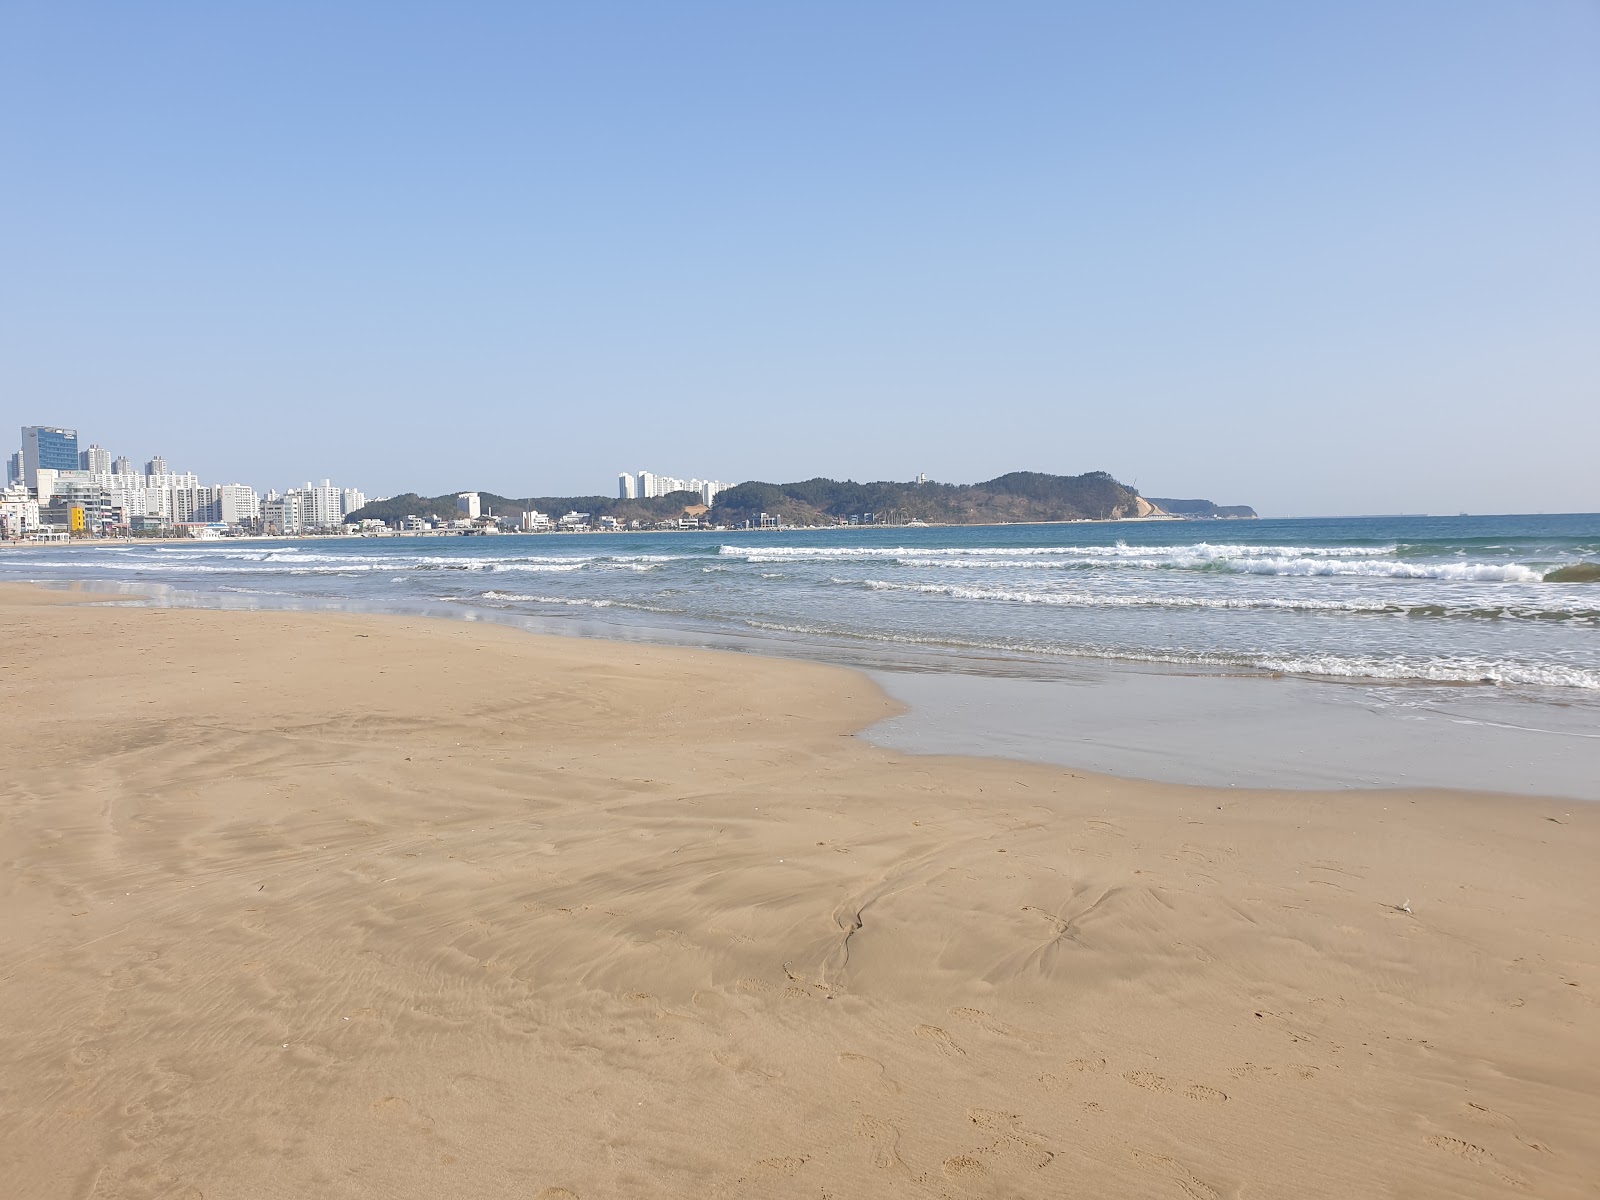 Zdjęcie Yeongildae Beach - popularne miejsce wśród znawców relaksu